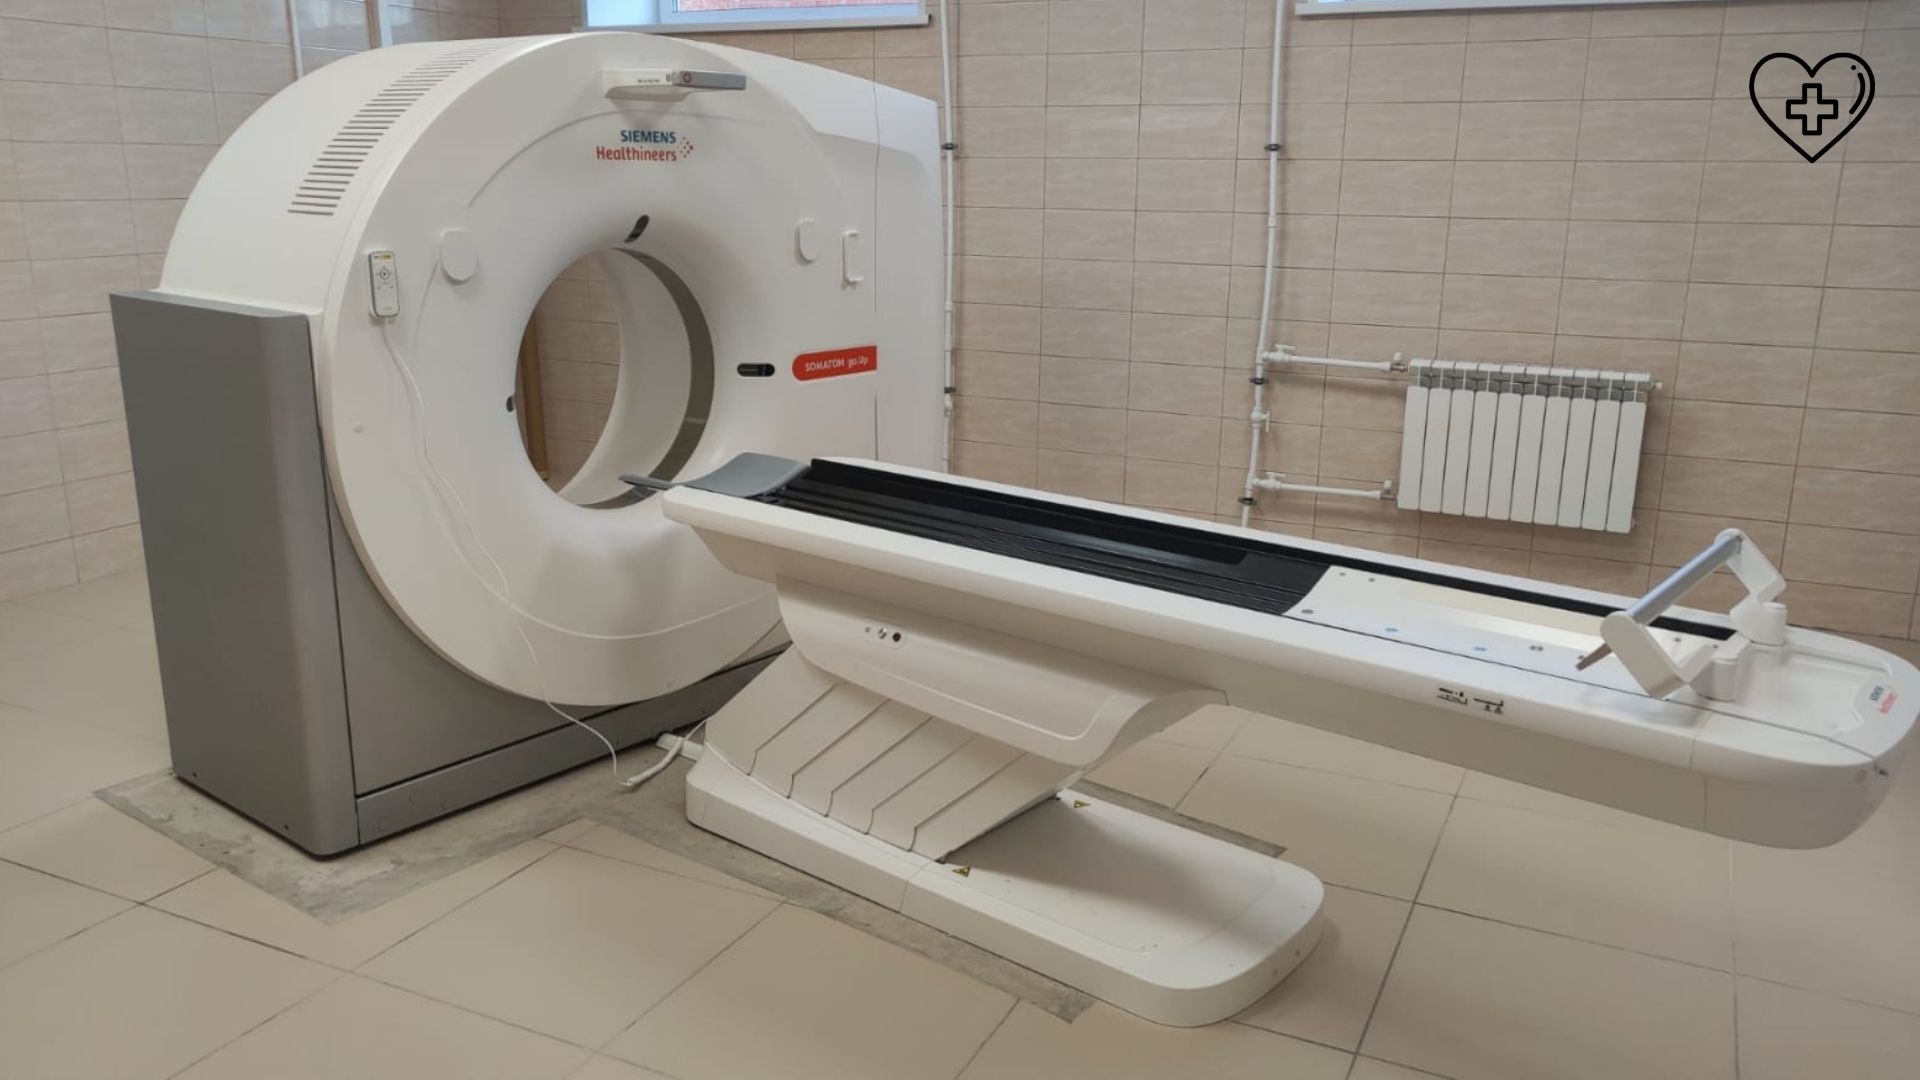 Новый компьютерный томограф заработал в центральной районной больнице Богородска в апреле 2022 года. 